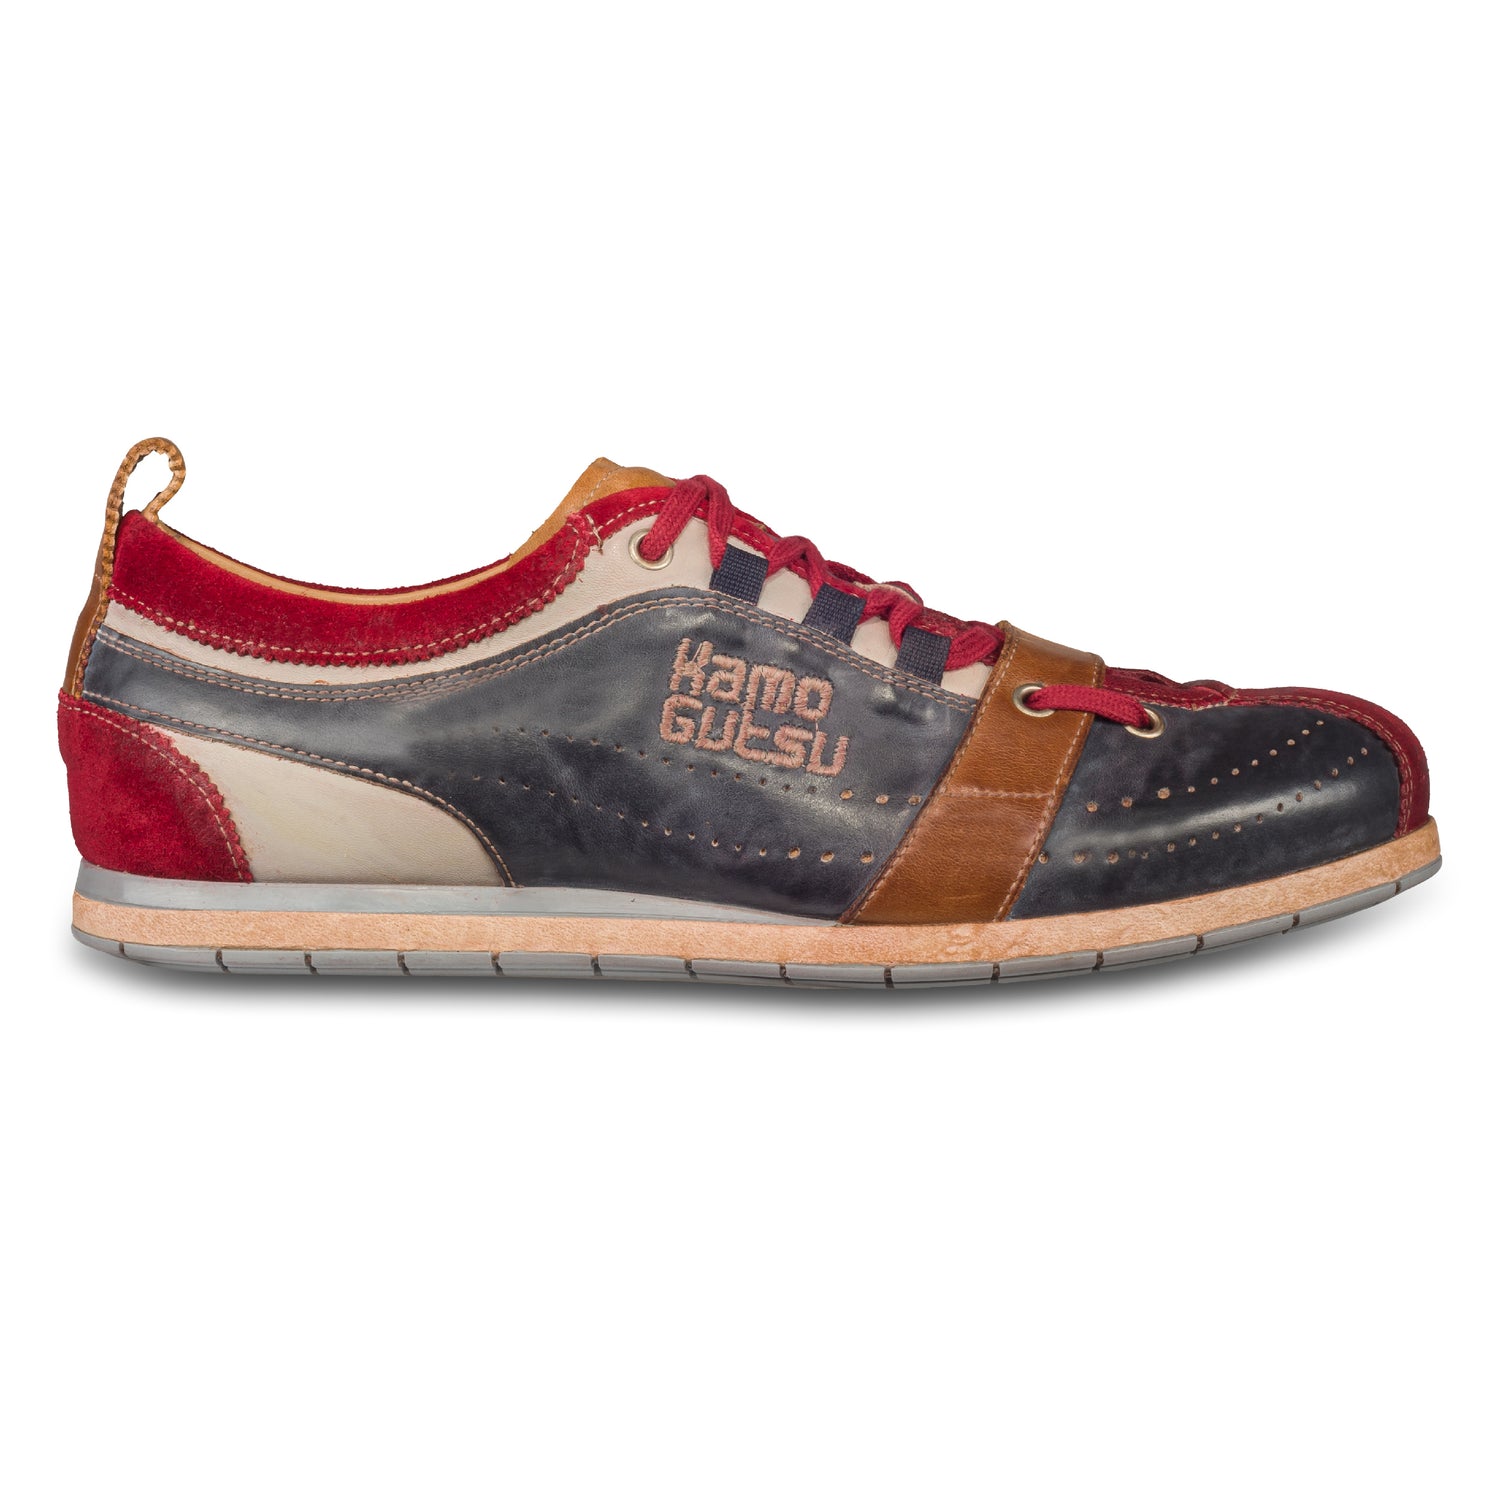 KAMO-GUTSU Herren Leder Sneaker, blau/rot mit braun, Modell TIFO-017 rosso + navy. Handgefertigt. Seitliche Ansicht der Außenseite rechter Schuh.